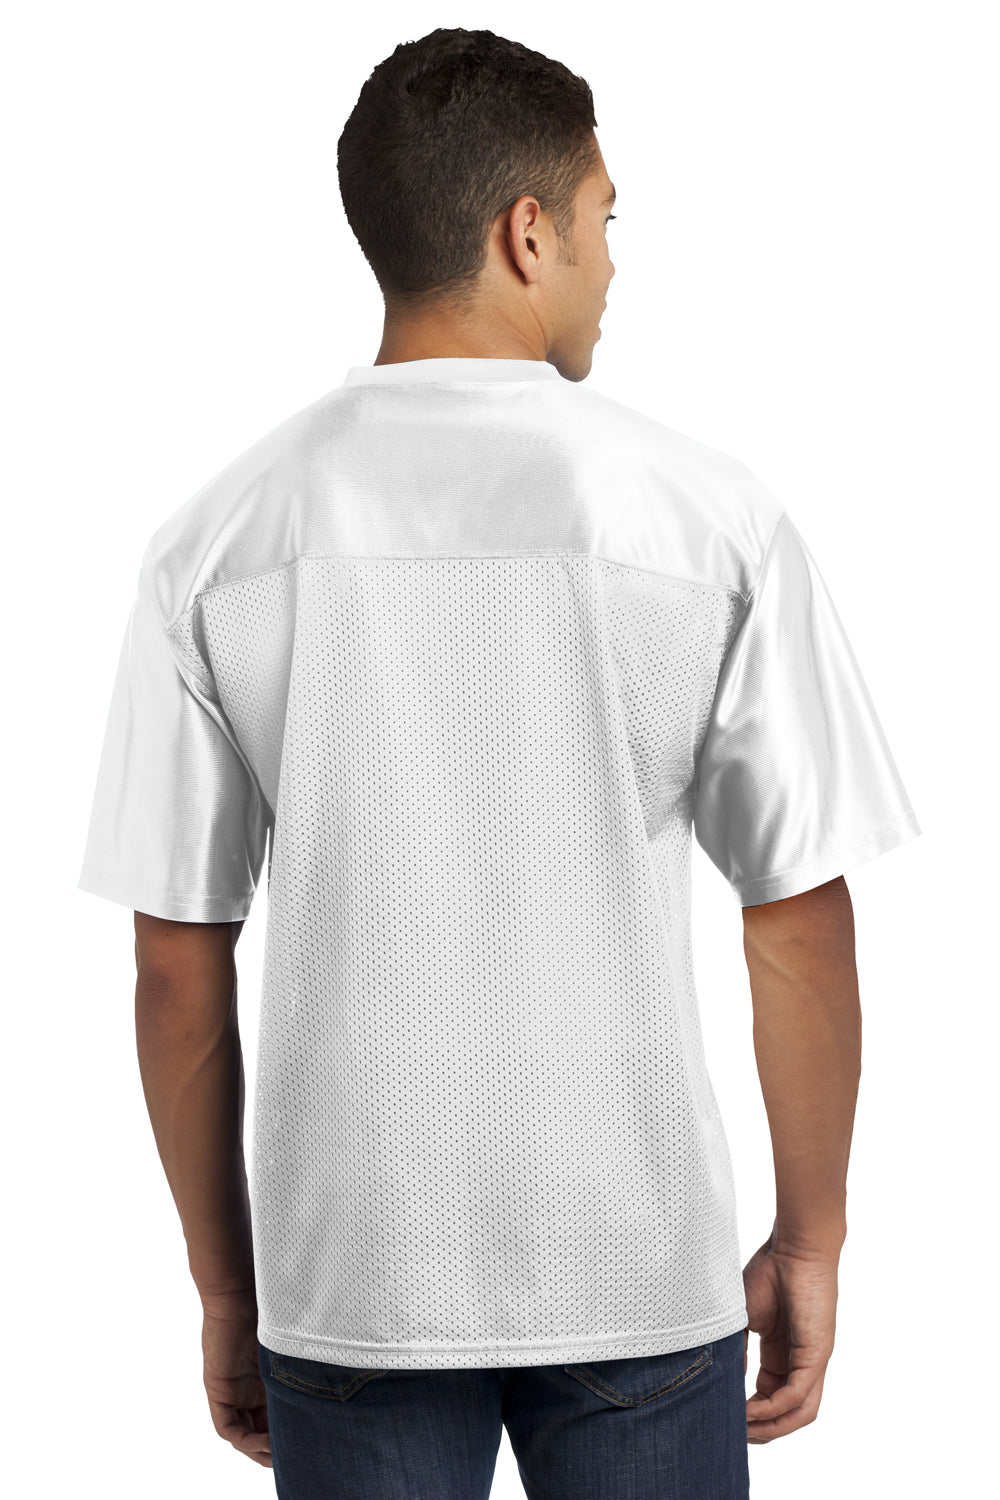 Sport-Tek ST307 Mens Short Sleeve V-Neck T-Shirt White Back